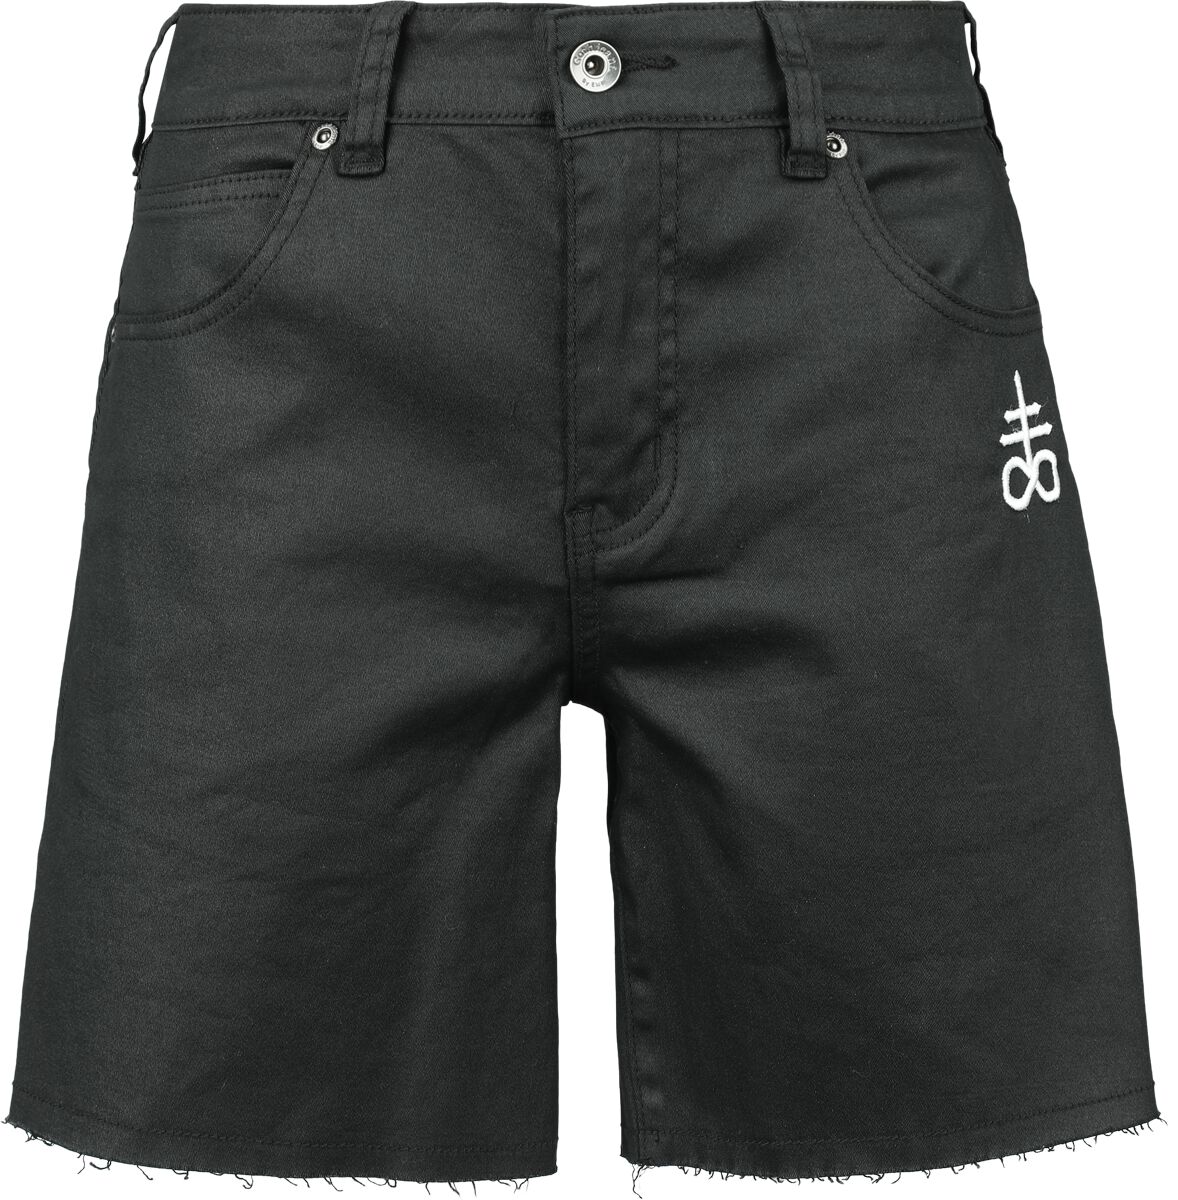 Black Blood by Gothicana - Gothic Short - Coated Shorts with Small Embroidery - 27 bis 31 - für Damen - Größe 31 - schwarz